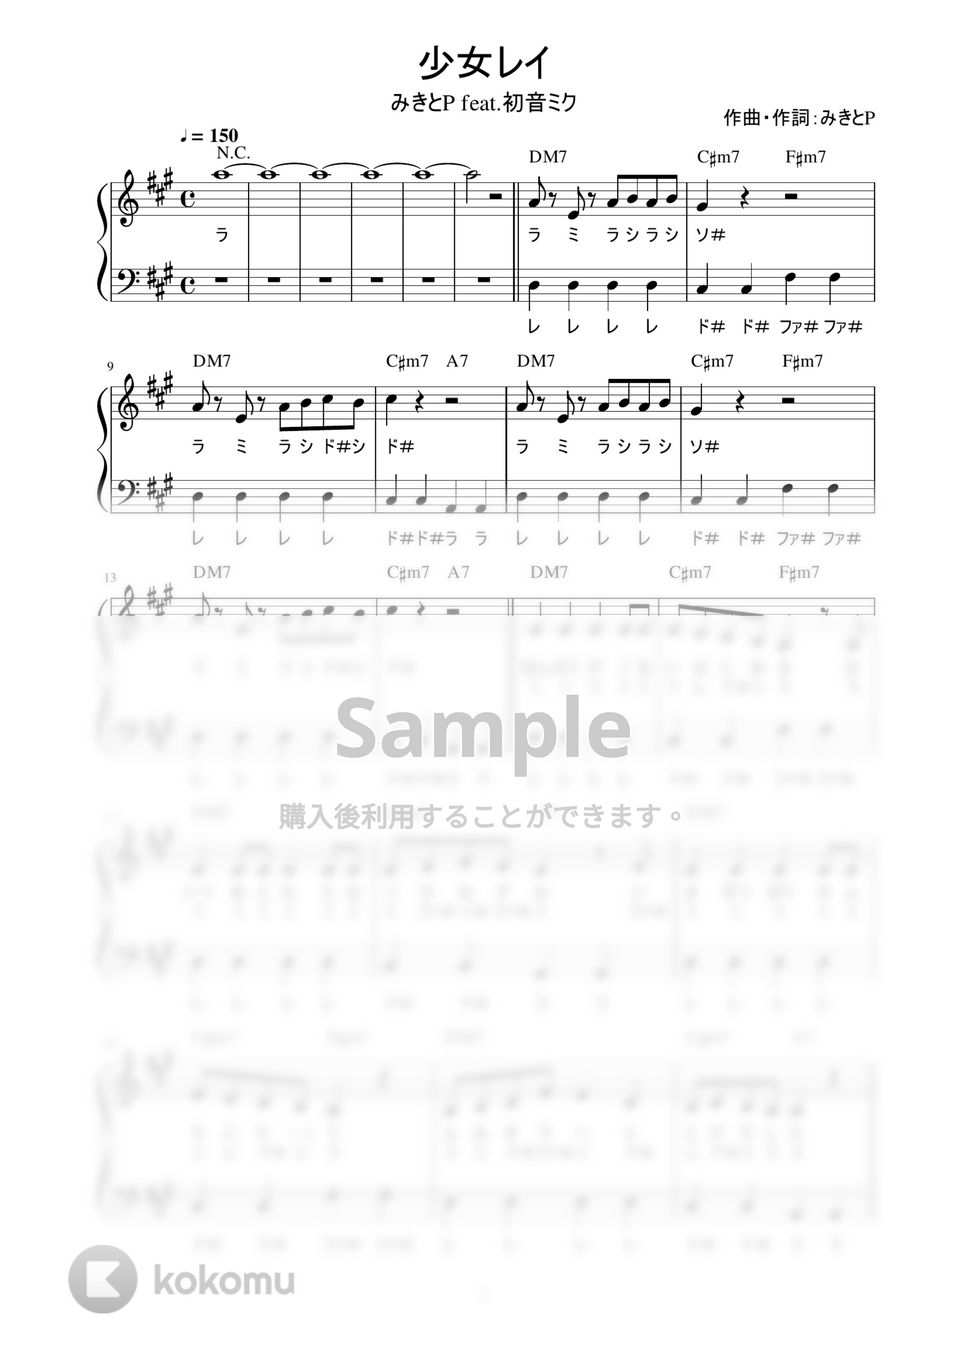 みきとP feat.初音ミク - 少女レイ (かんたん / 歌詞付き / ドレミ付き / 初心者) by piano.tokyo